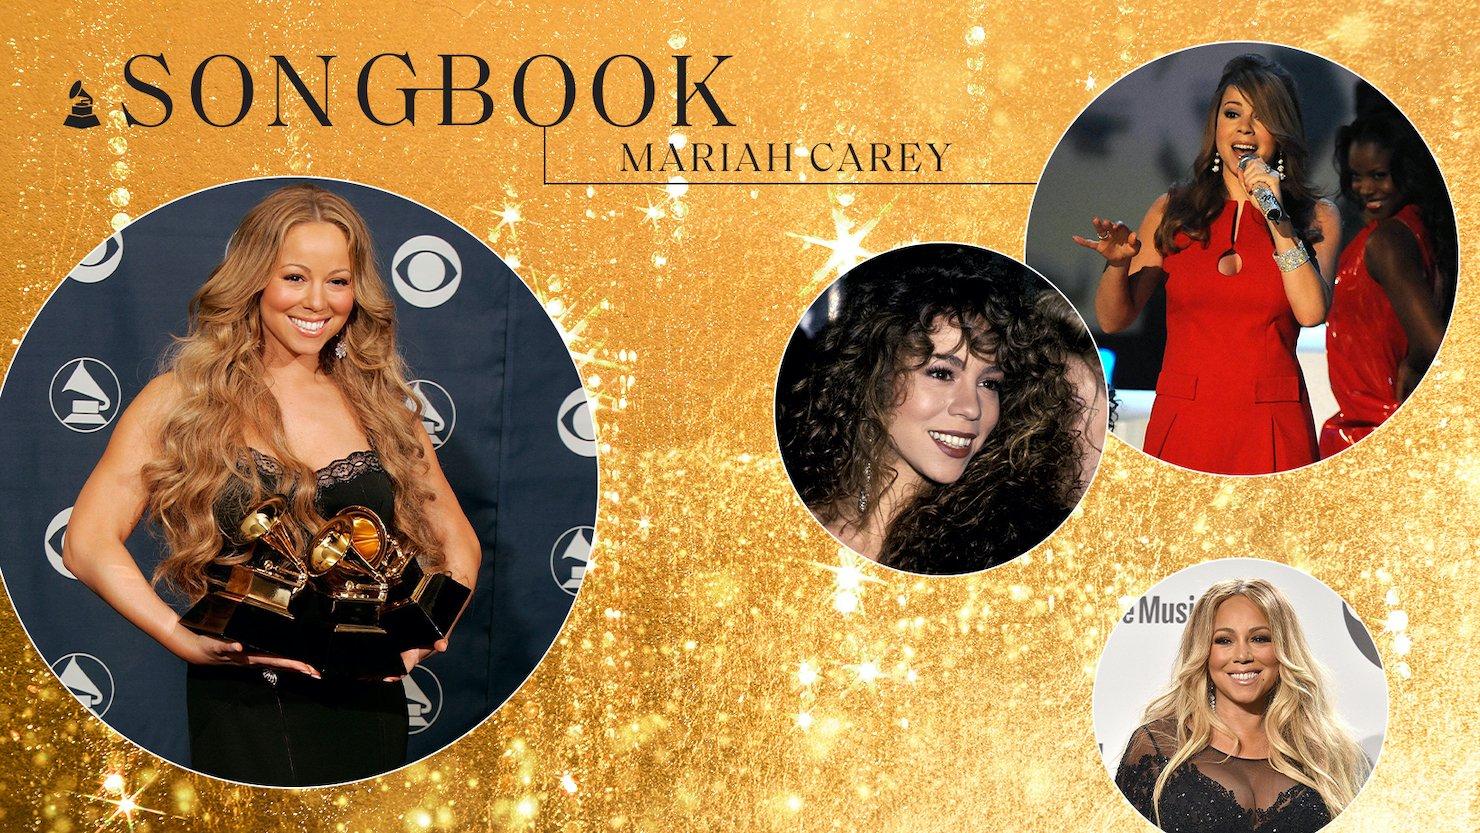 Mariah Carey Songbook hero